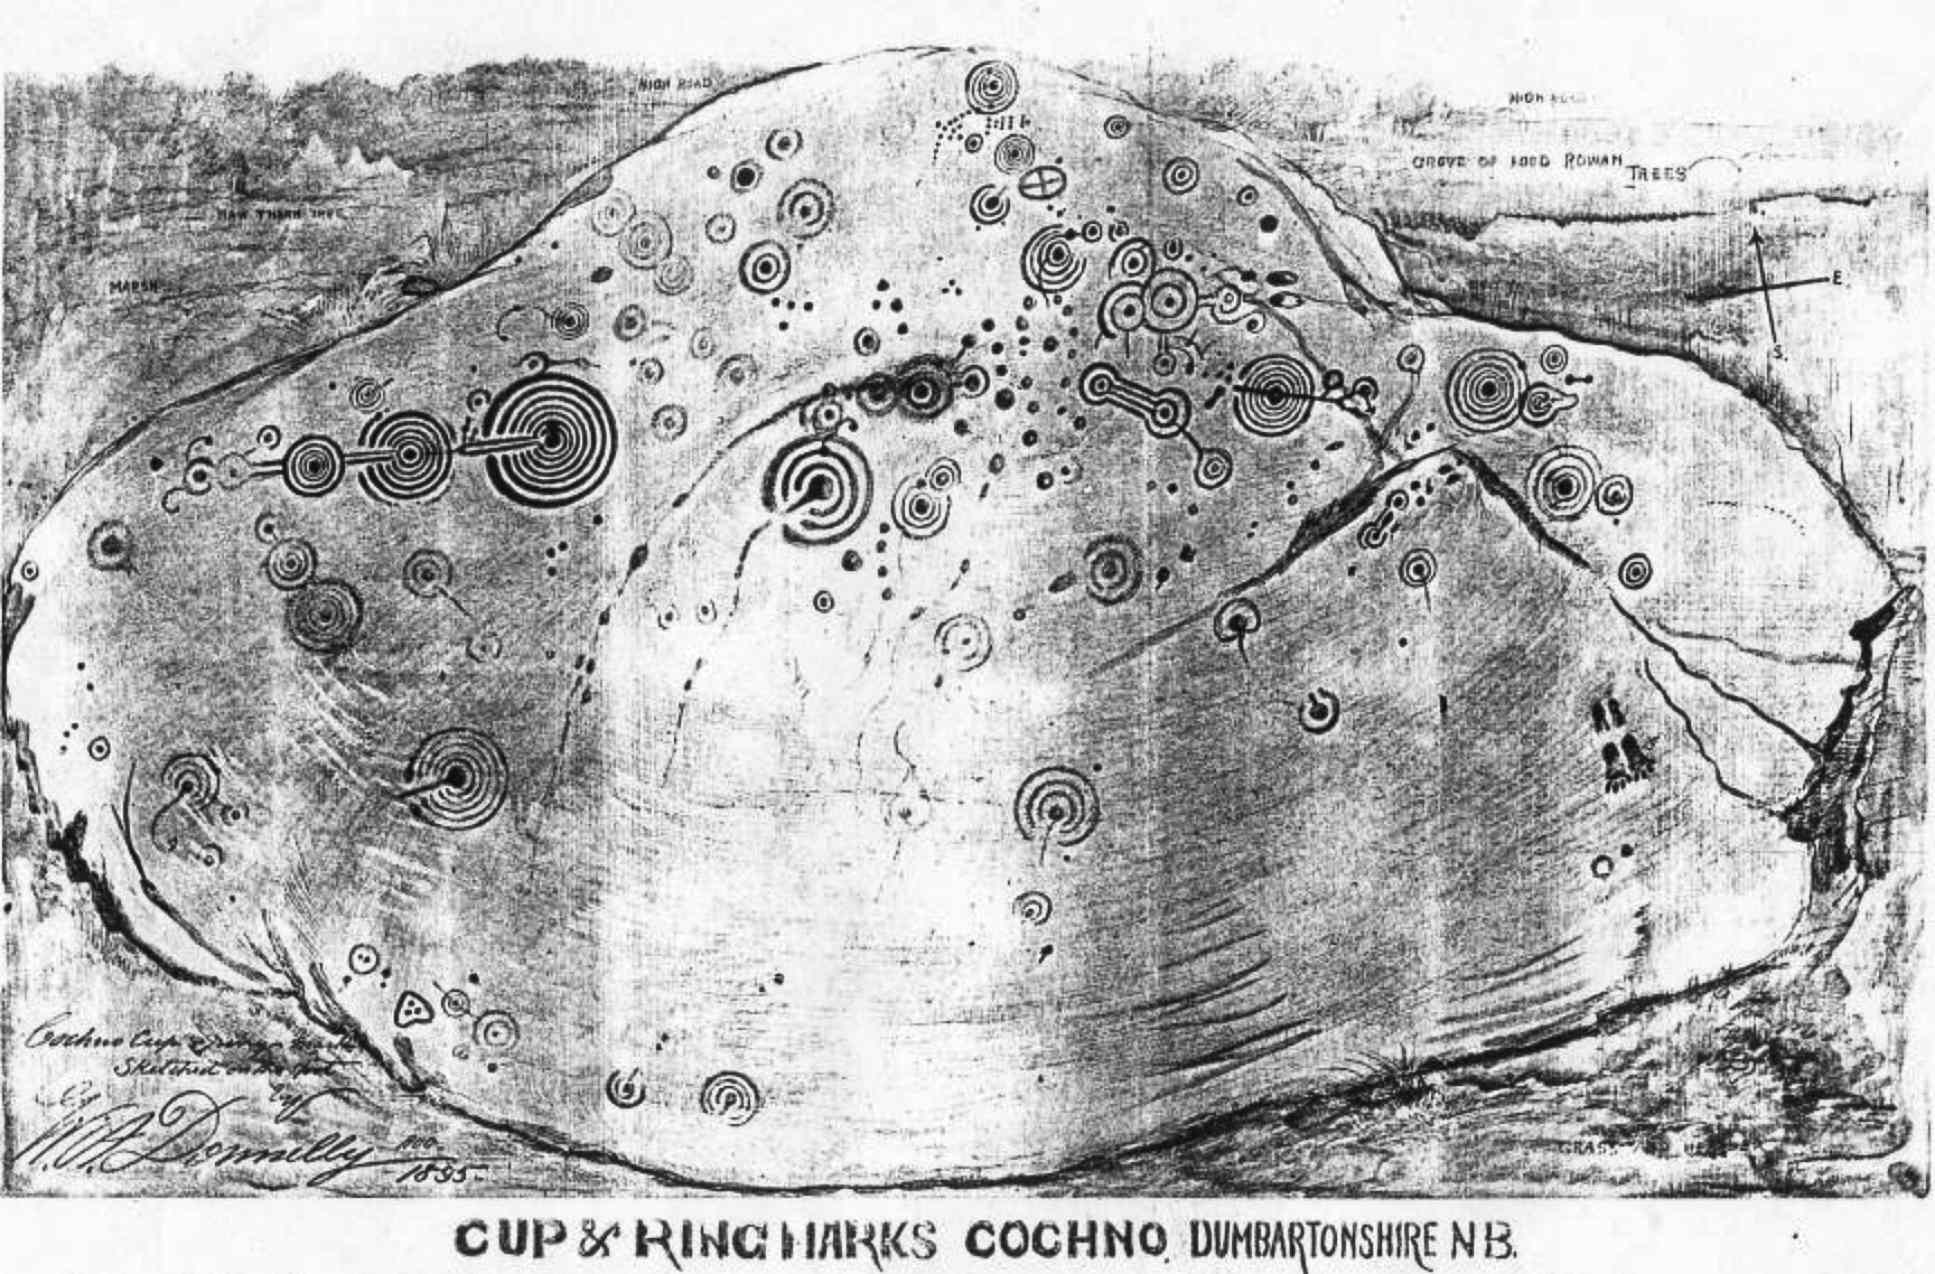 Skica Cochno kamena koju je napravio WA Donnelly iz 1895